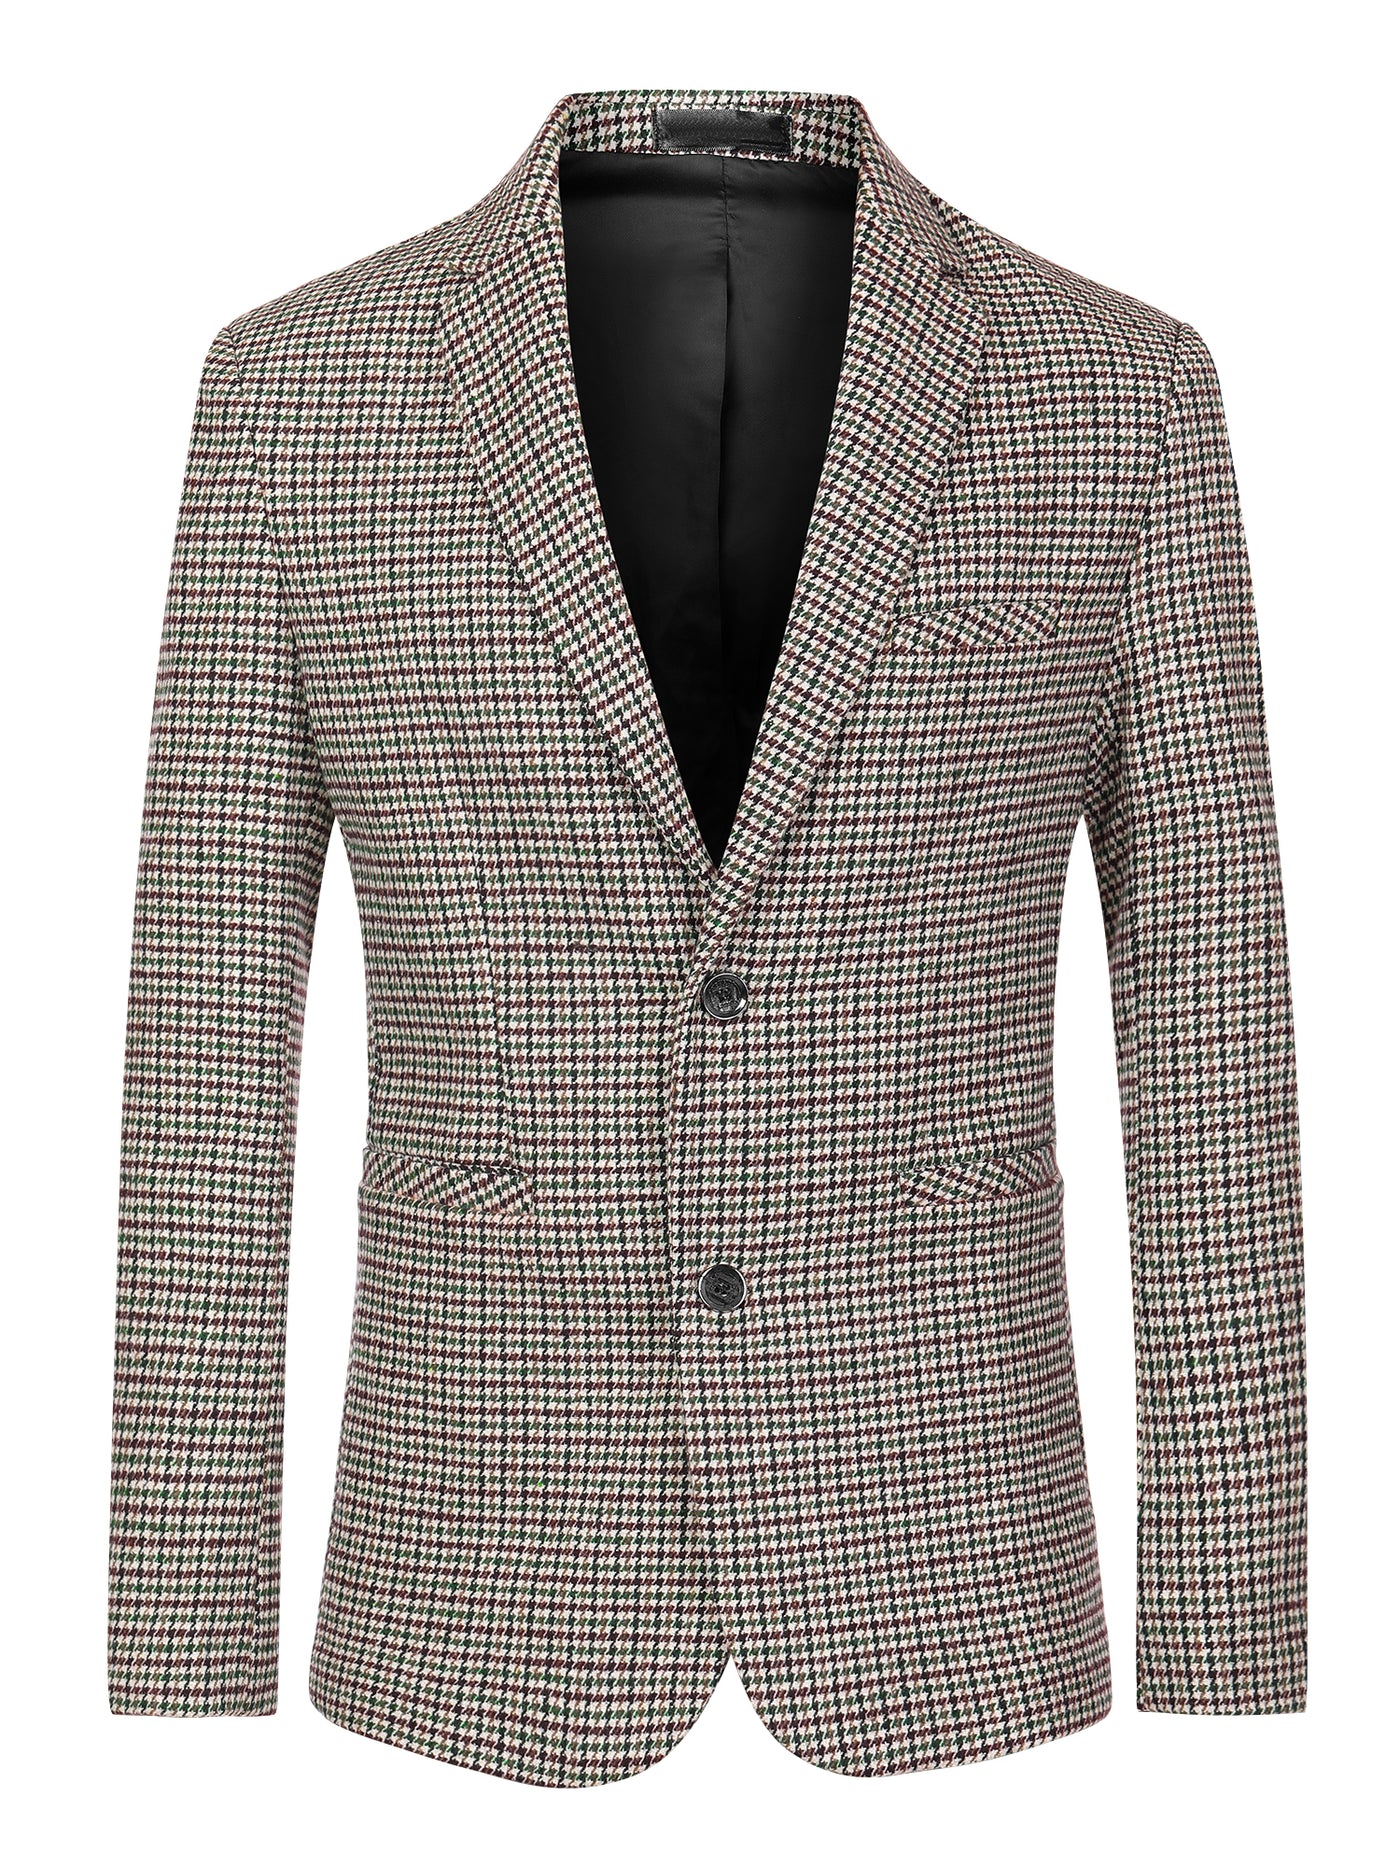 Bublédon Men's Houndstooth Blazer Notched Lapel Suit Jacket Plaid Sports Coat